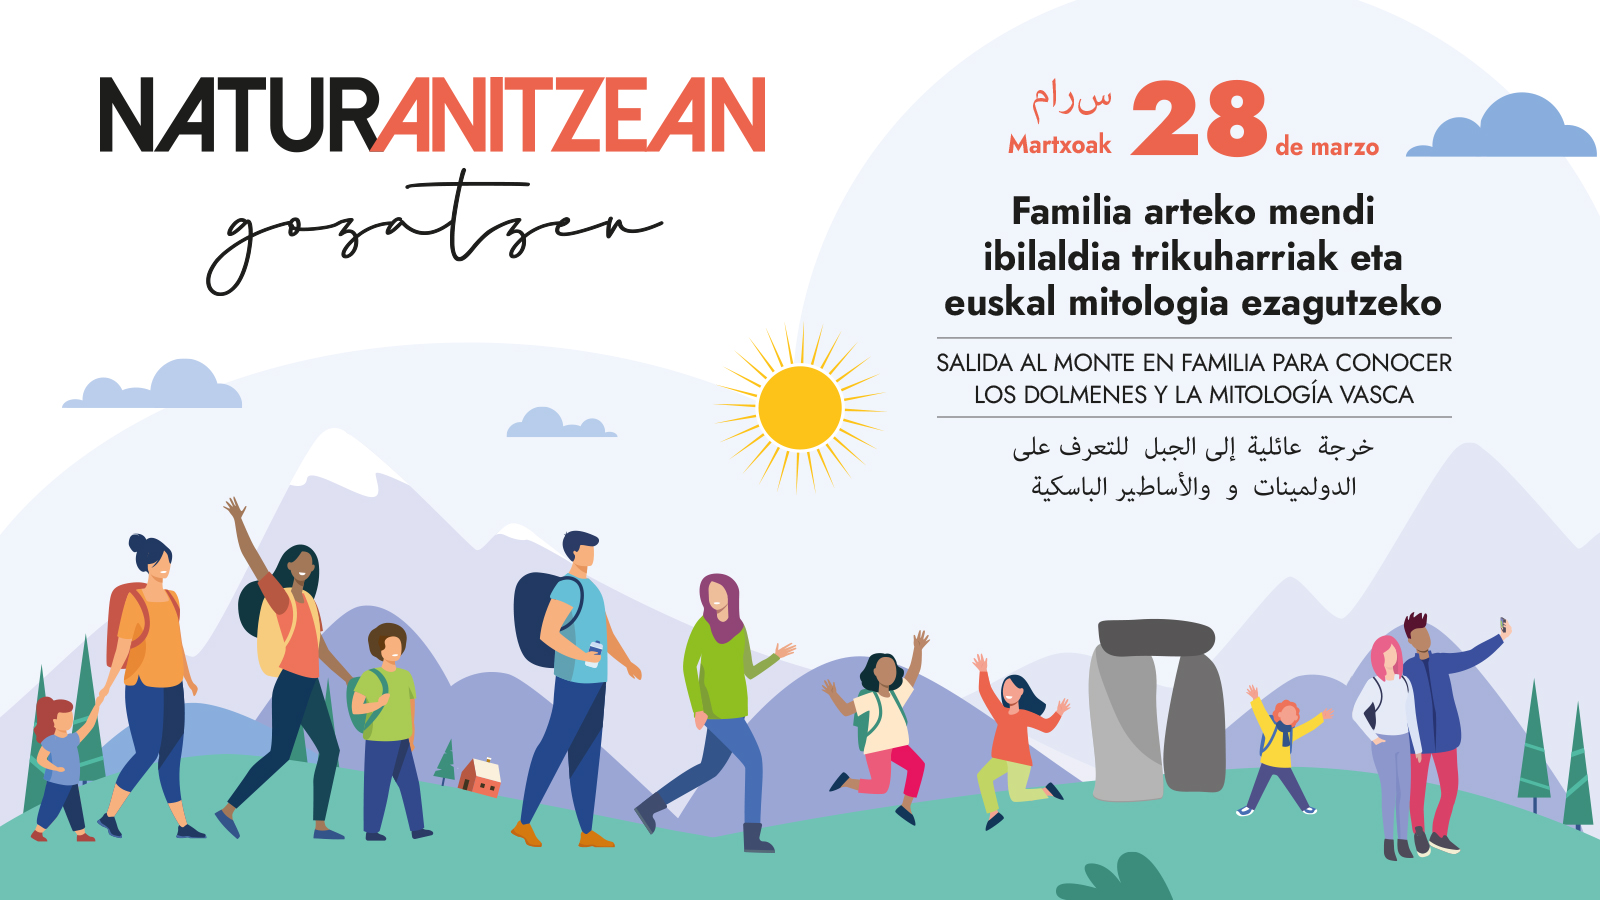 Naturanitzean gozatzen:  28 de marzo desde el Guardetxe para conocer dólmenes y mitologia